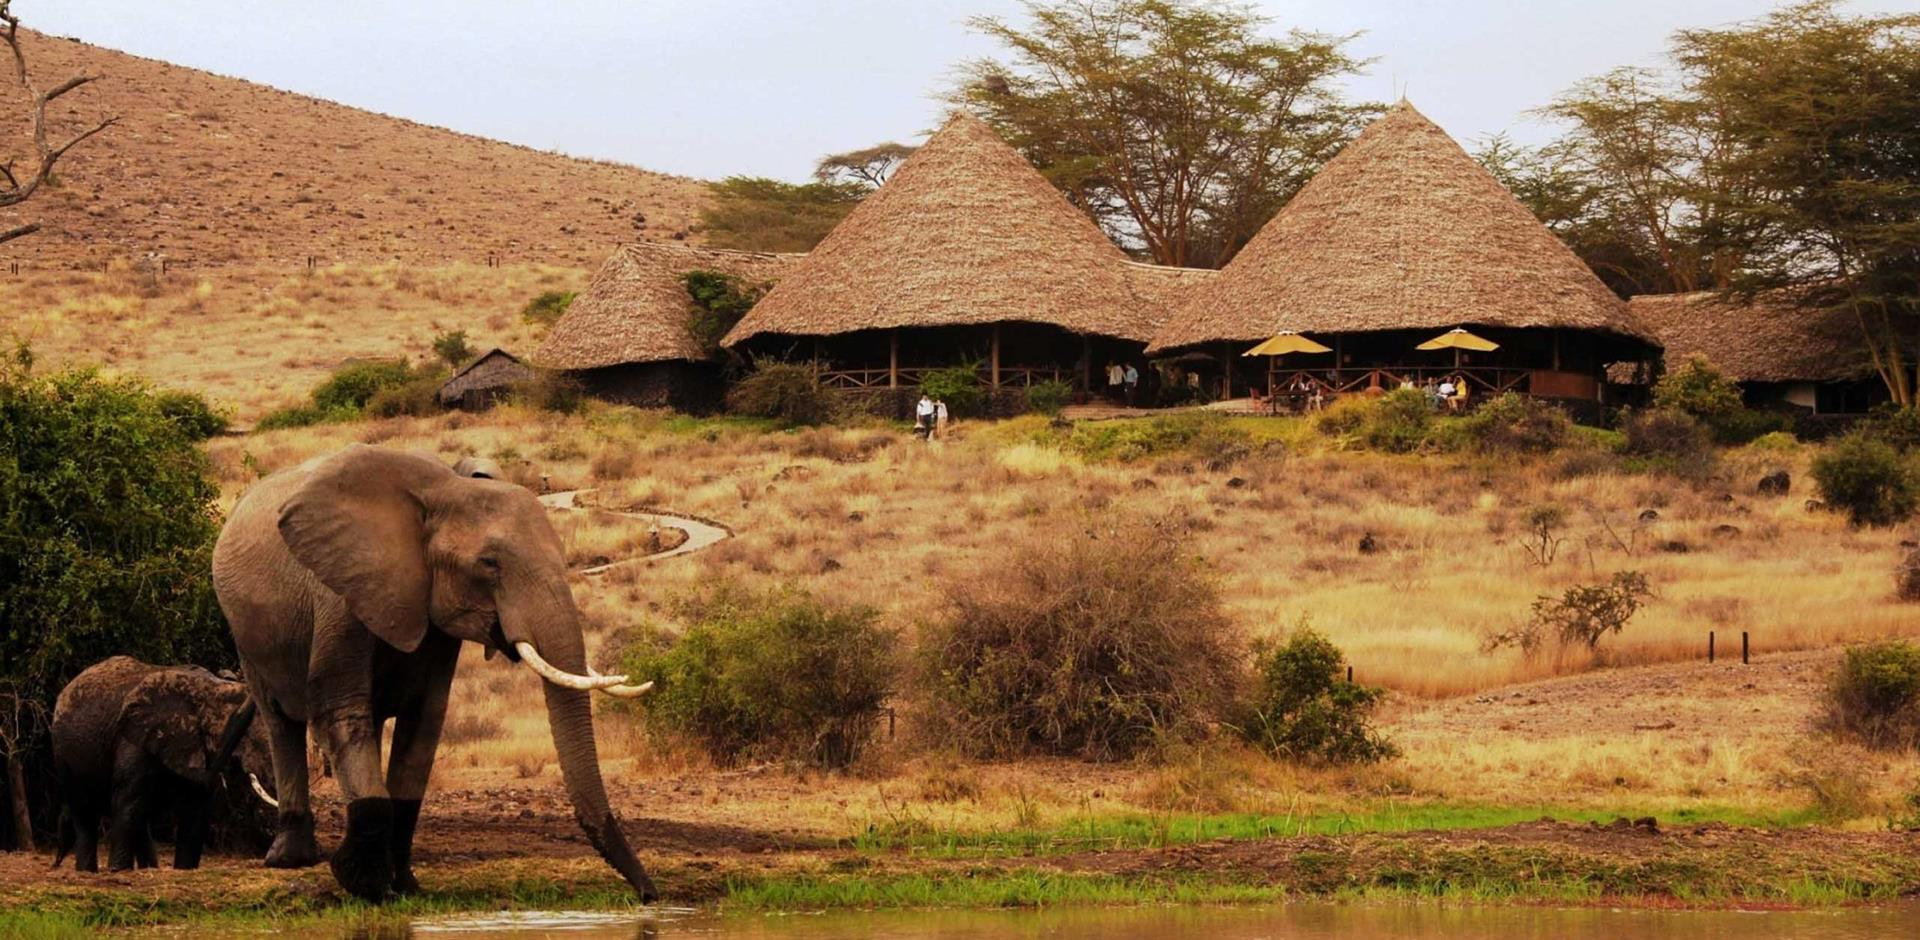 Camp main areas, Elewana Tortilis Camp, Amboseli, Kenya